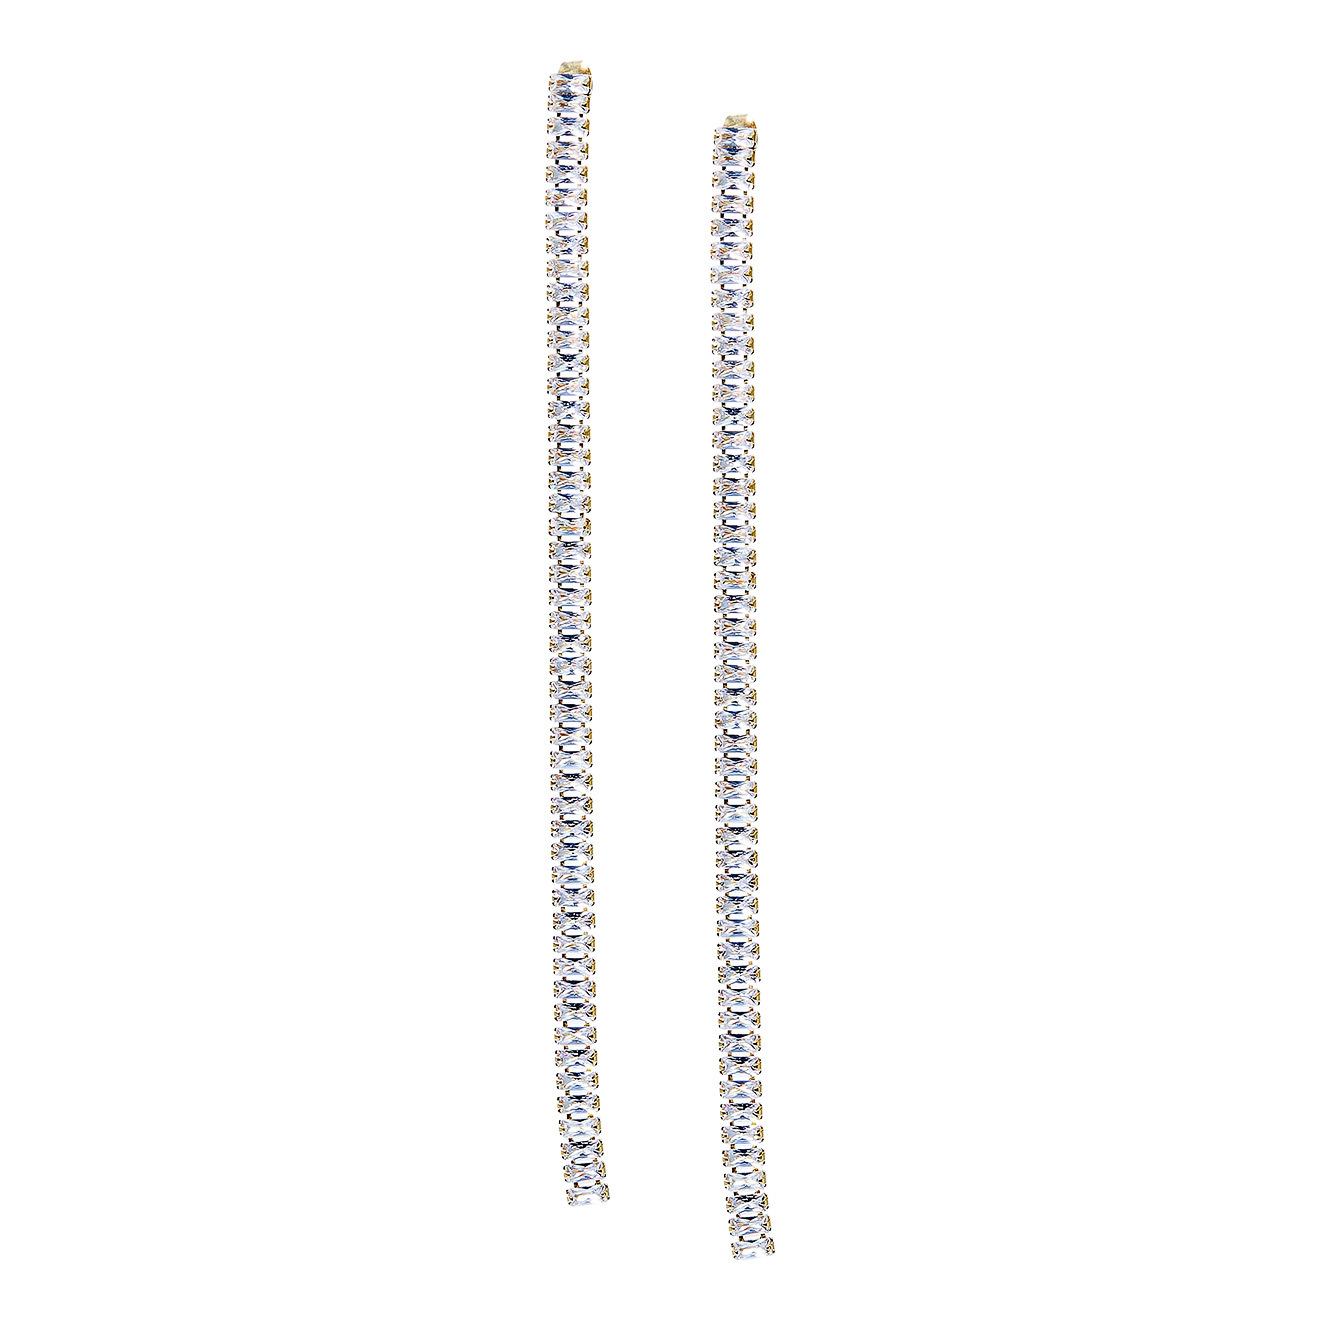 Herald Percy Золотистые длинные серьги-дорожки с кристаллами